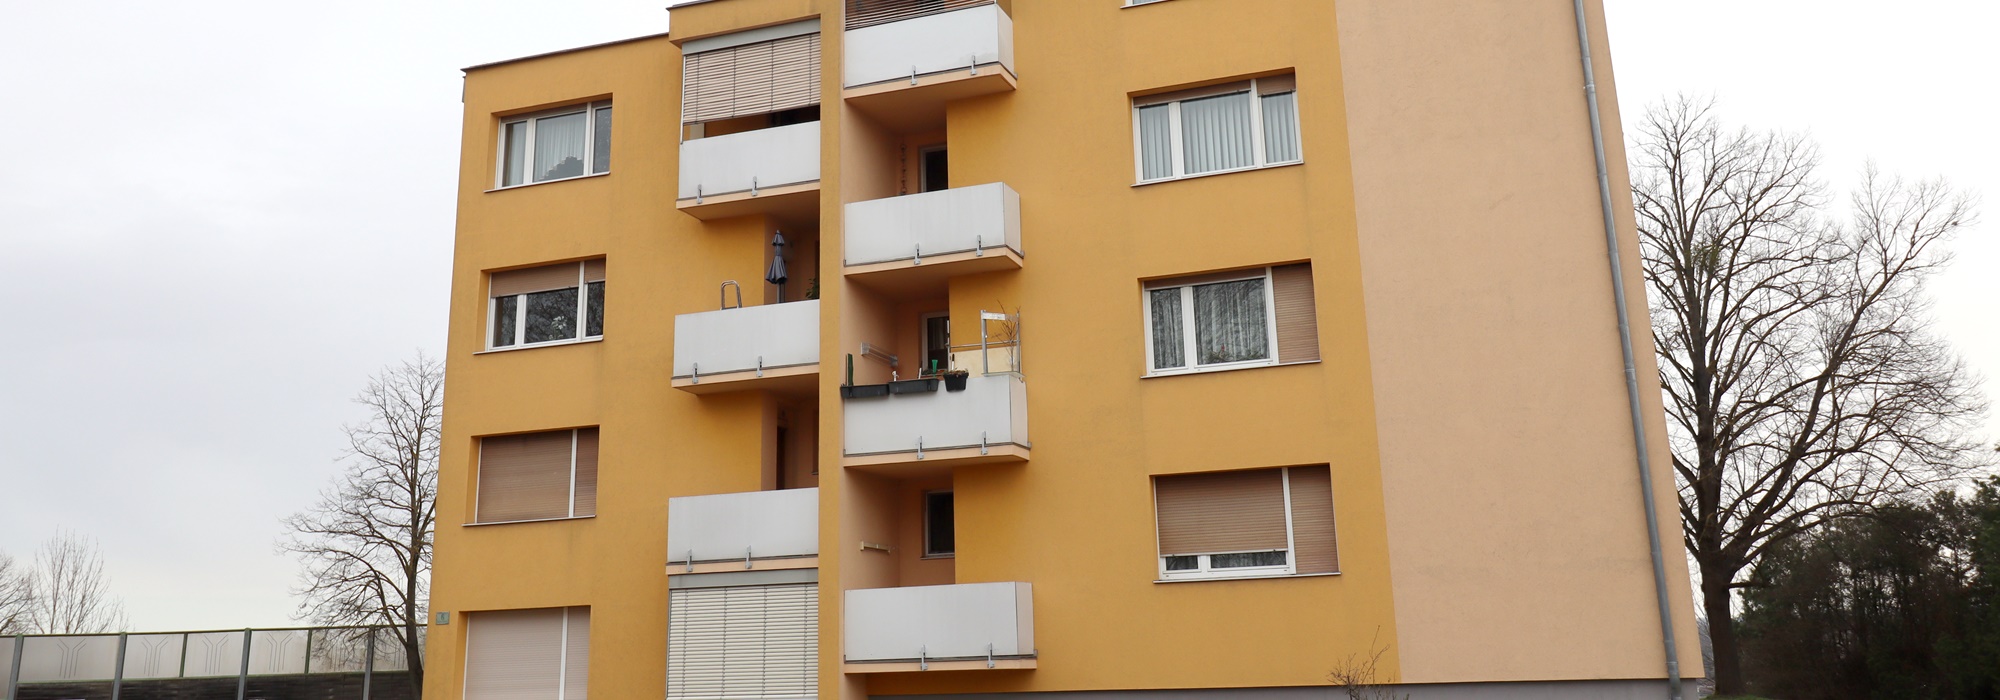 Sehr schöne 60 m² Wohnung mit neuer Küche und neu sanierten Sanitäranlagen mit kleinem Balkon zu vermieten